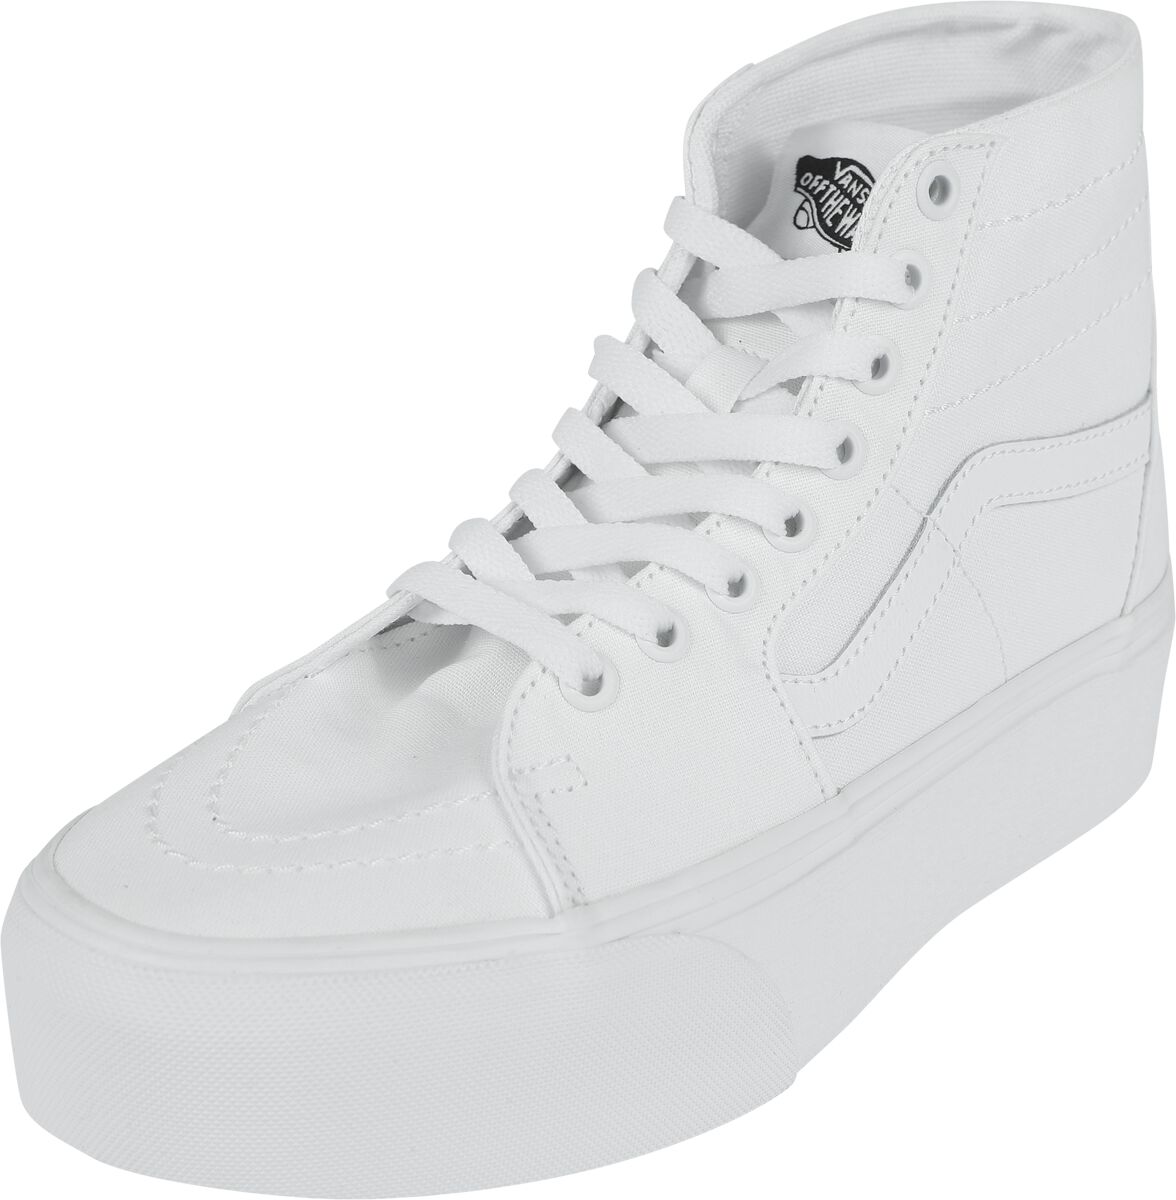 Vans Sneaker high - SK8-Hi Tapered Stackform Canvas True White - EU37 bis EU41 - für Damen - Größe EU41 - weiß